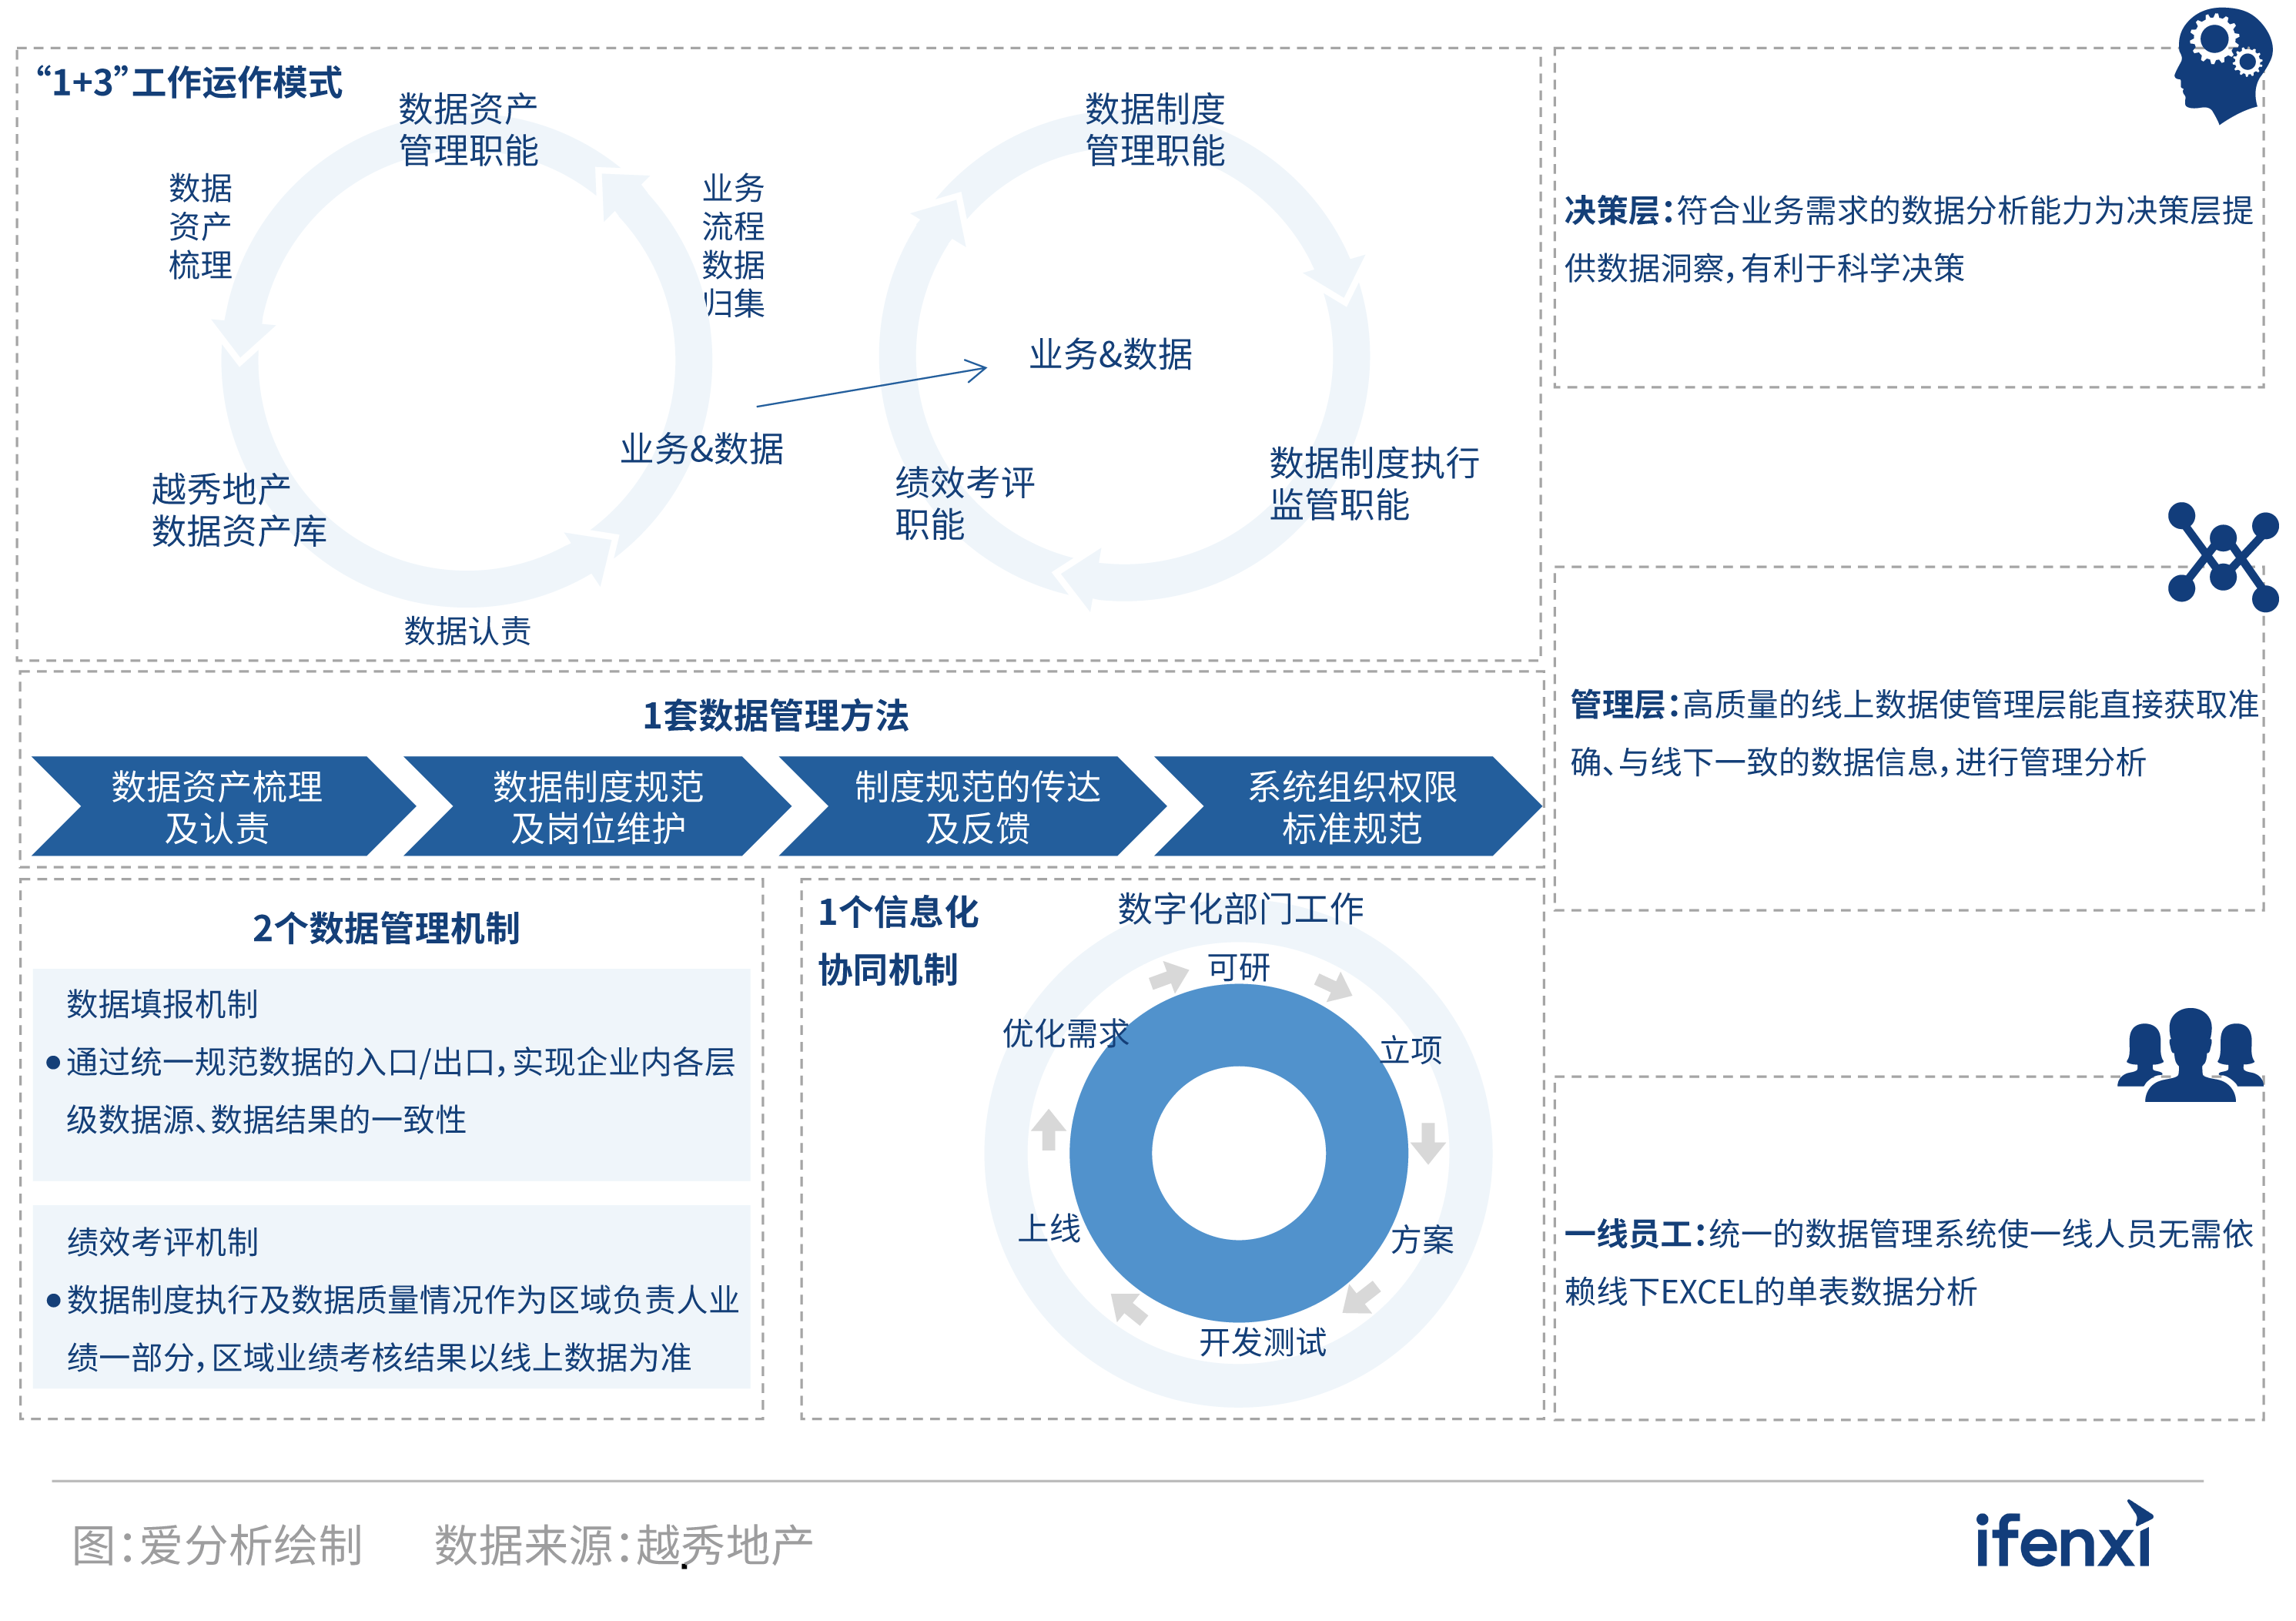 2021愛分析·中國房企數字化實踐報告